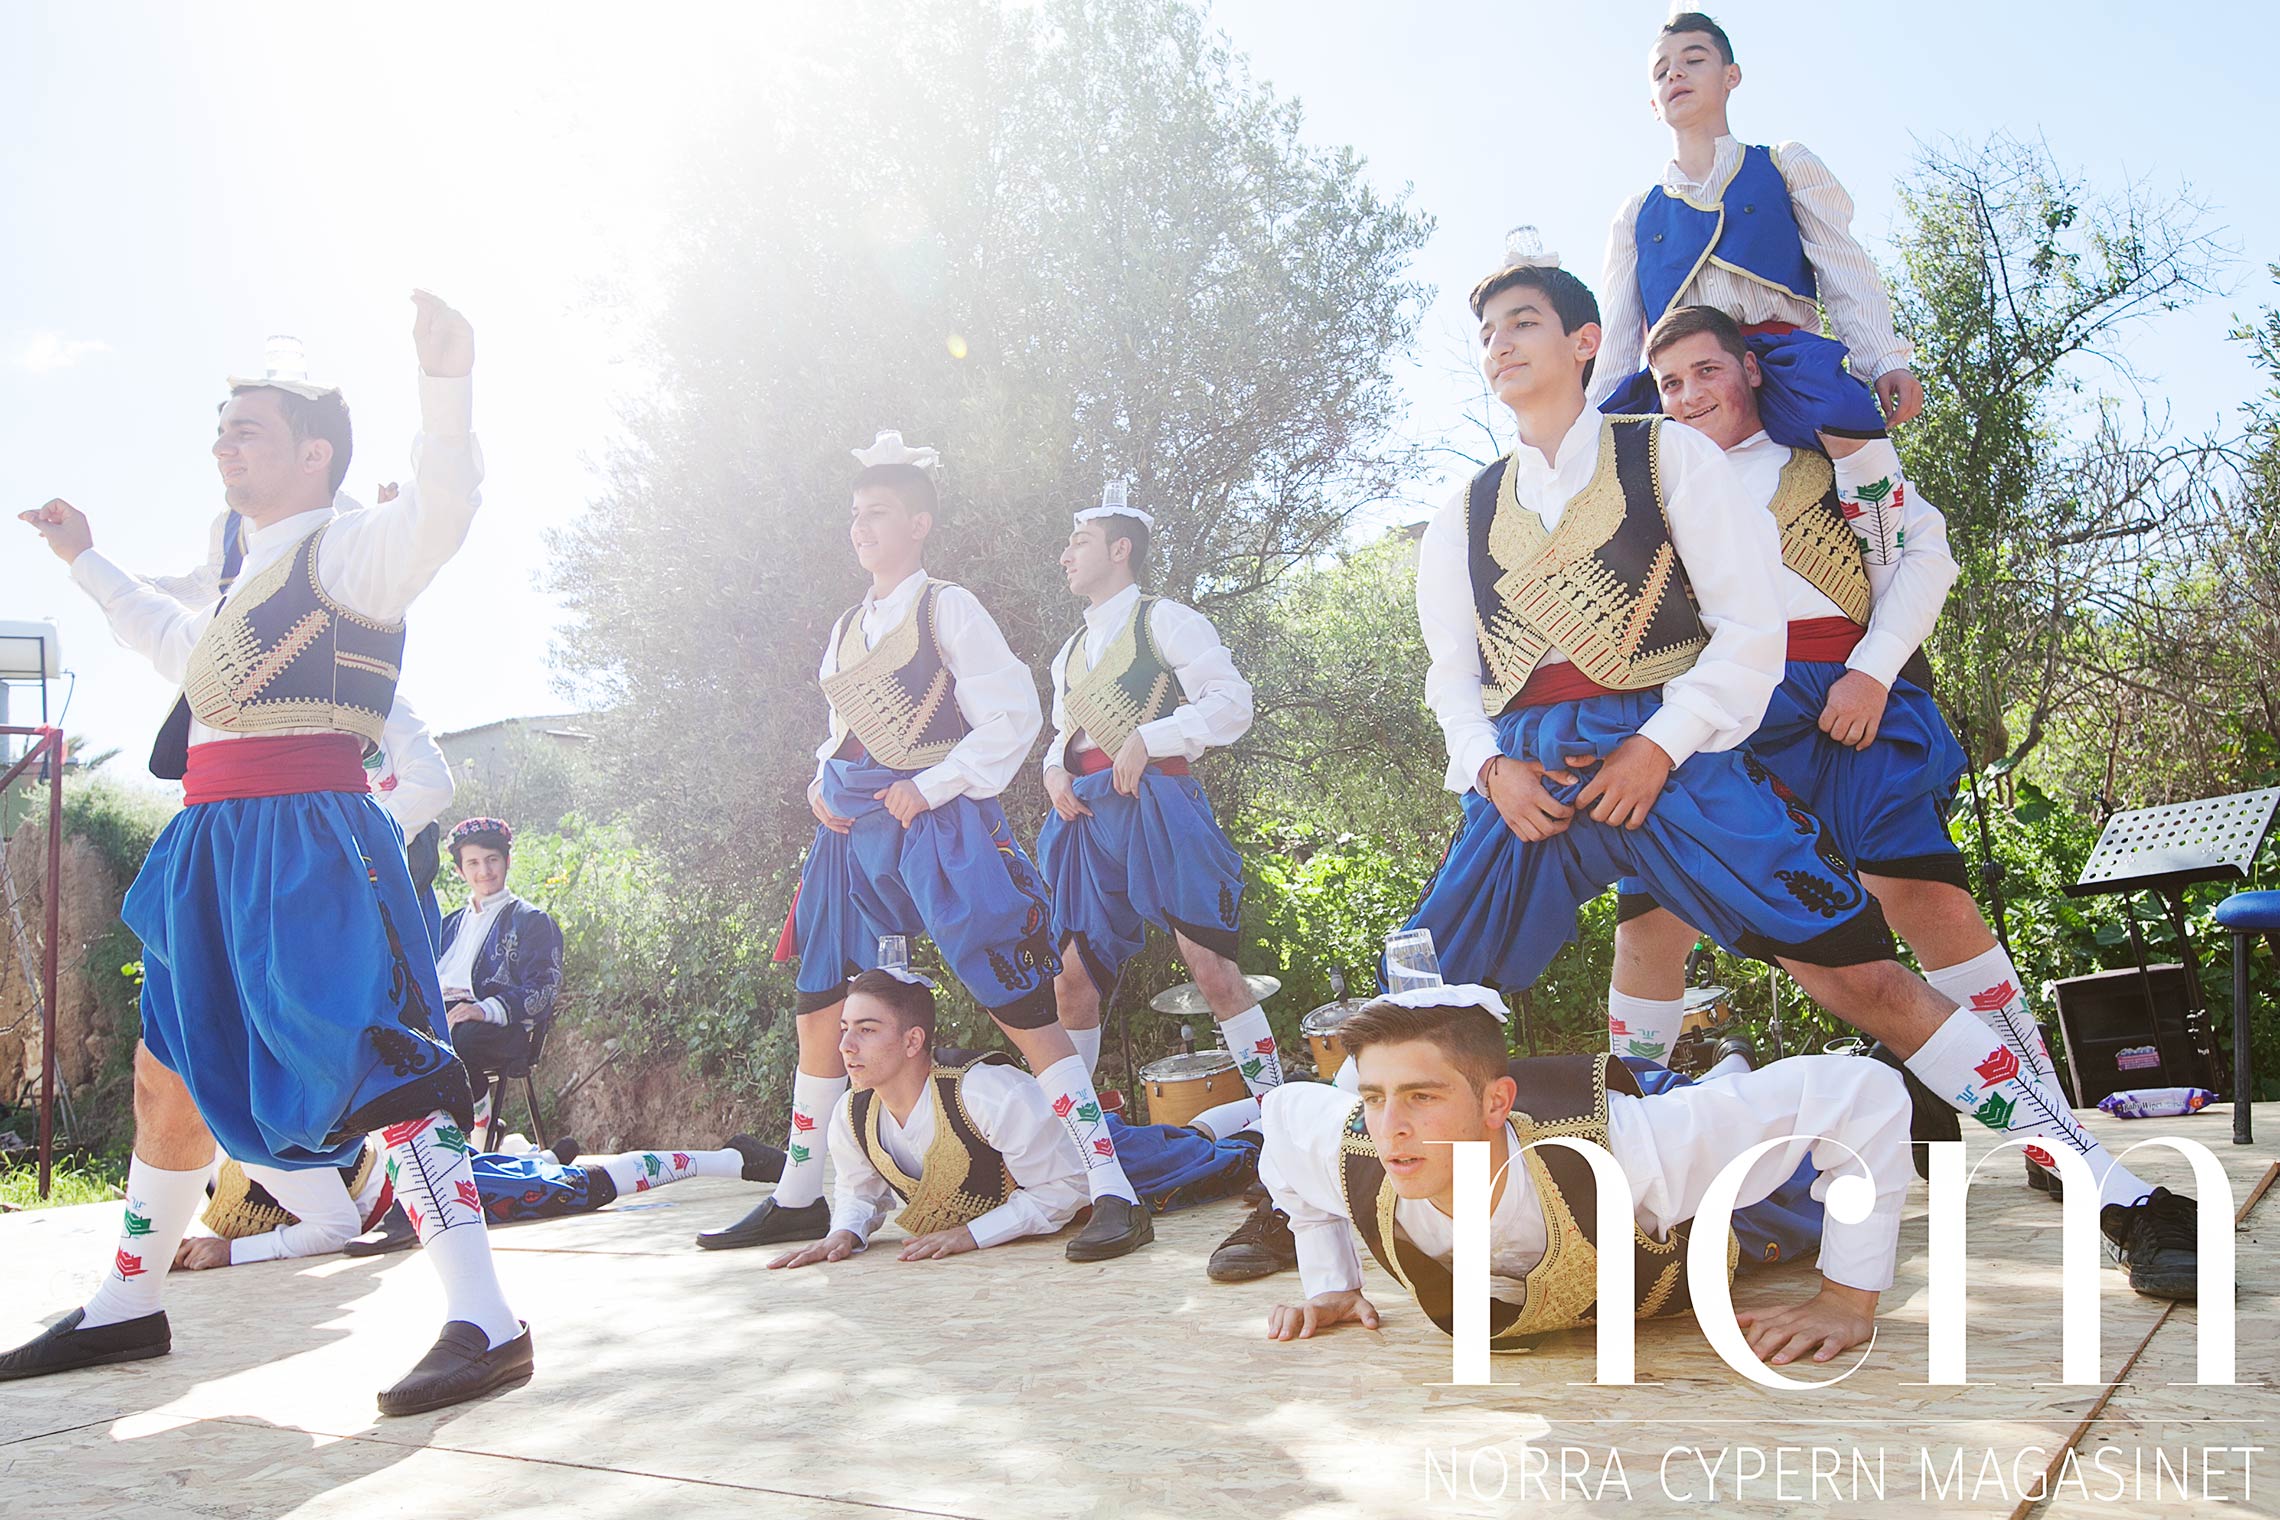 Folkdans vid ekomarknaden på Norra Cypern